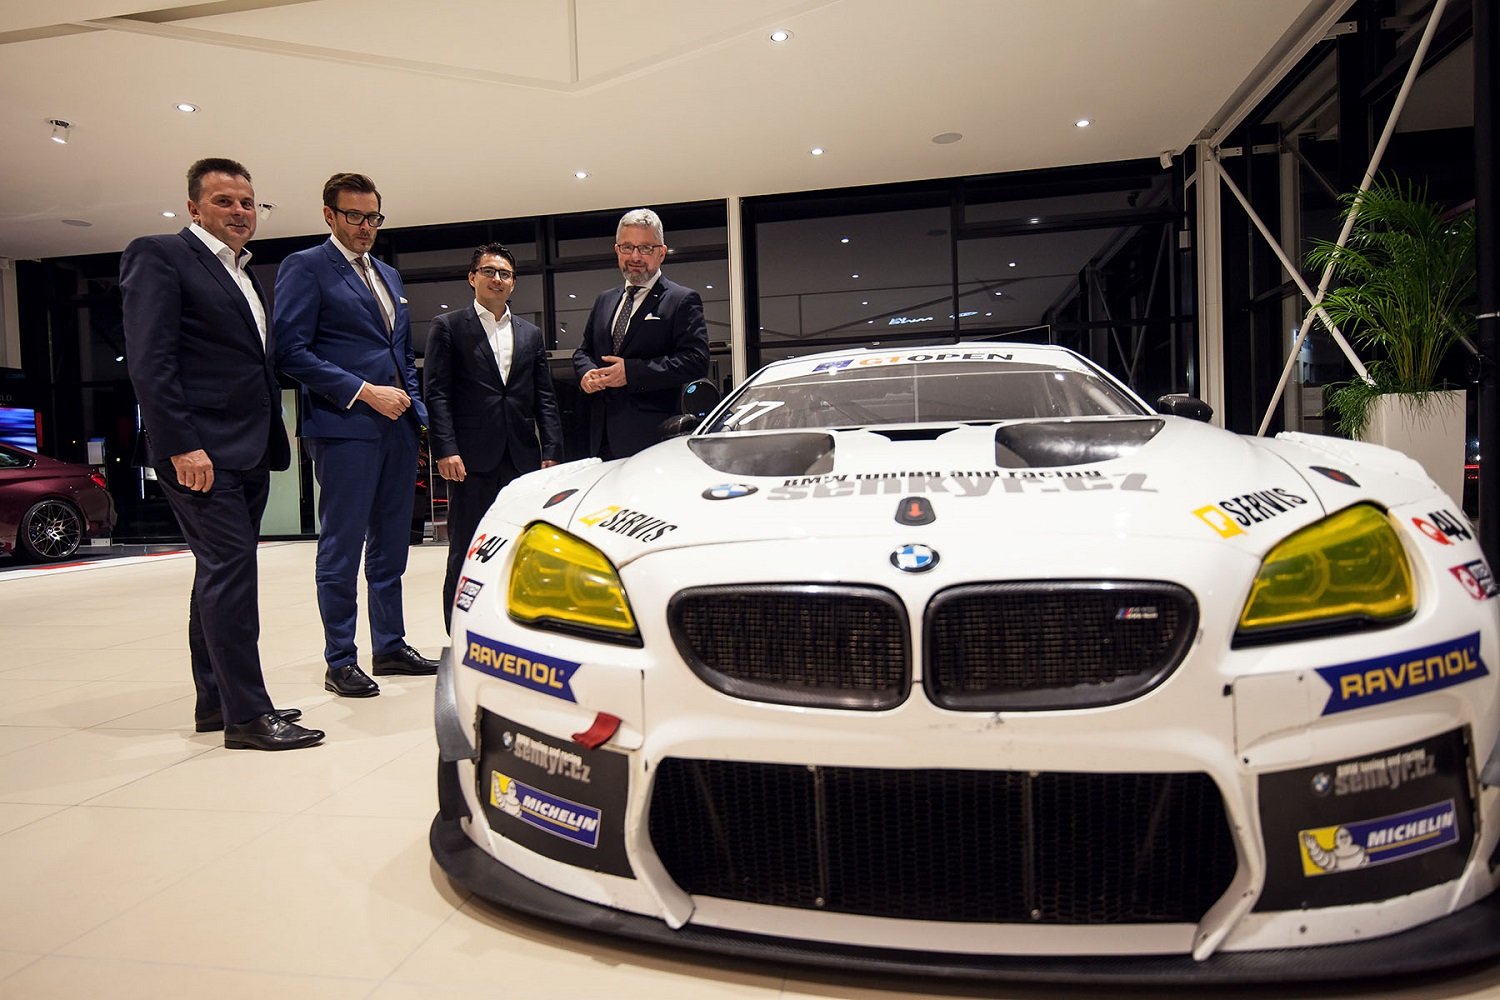 Společnost Renocar otevřela v Brně jediný BMW M showroom v Evropě a vlastní muzeum